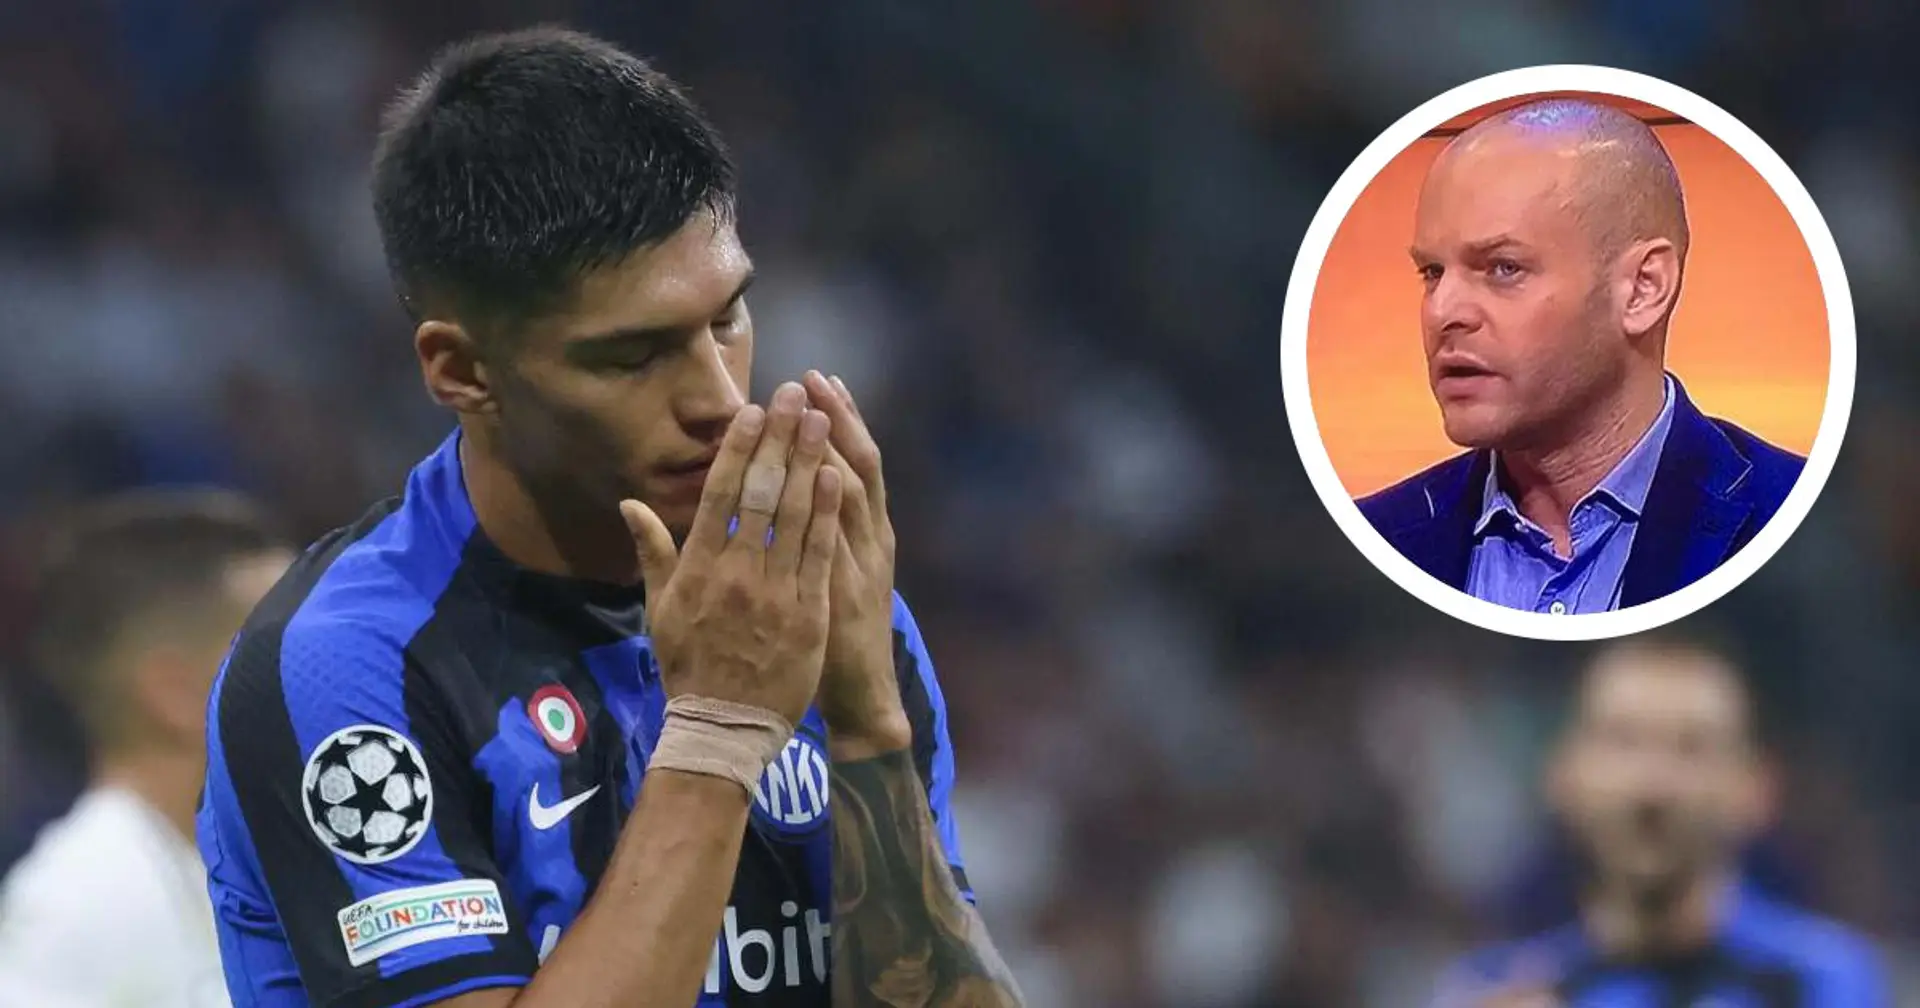 "Correa indecente ma un altro giocatore mi fa arrabbiare", Biasin punta il dito dopo Inter-Parma